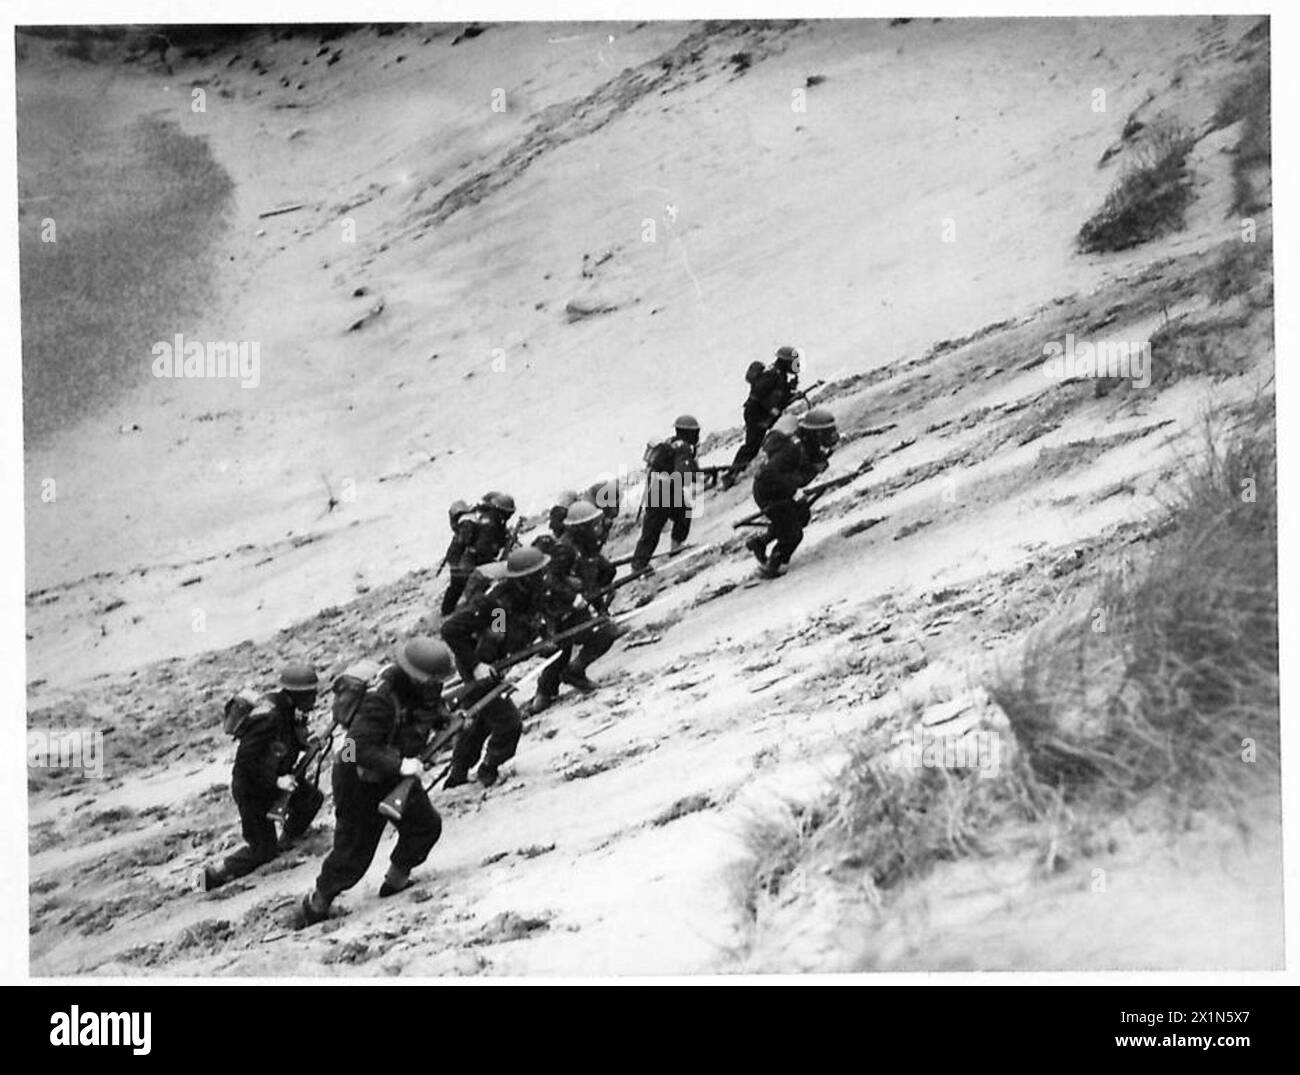 TRUPPE BELGHE IN ALLENAMENTO - Una squadra che arrampica sui lati ripidi di una duna di sabbia con le loro maschere antigas, British Army Foto Stock